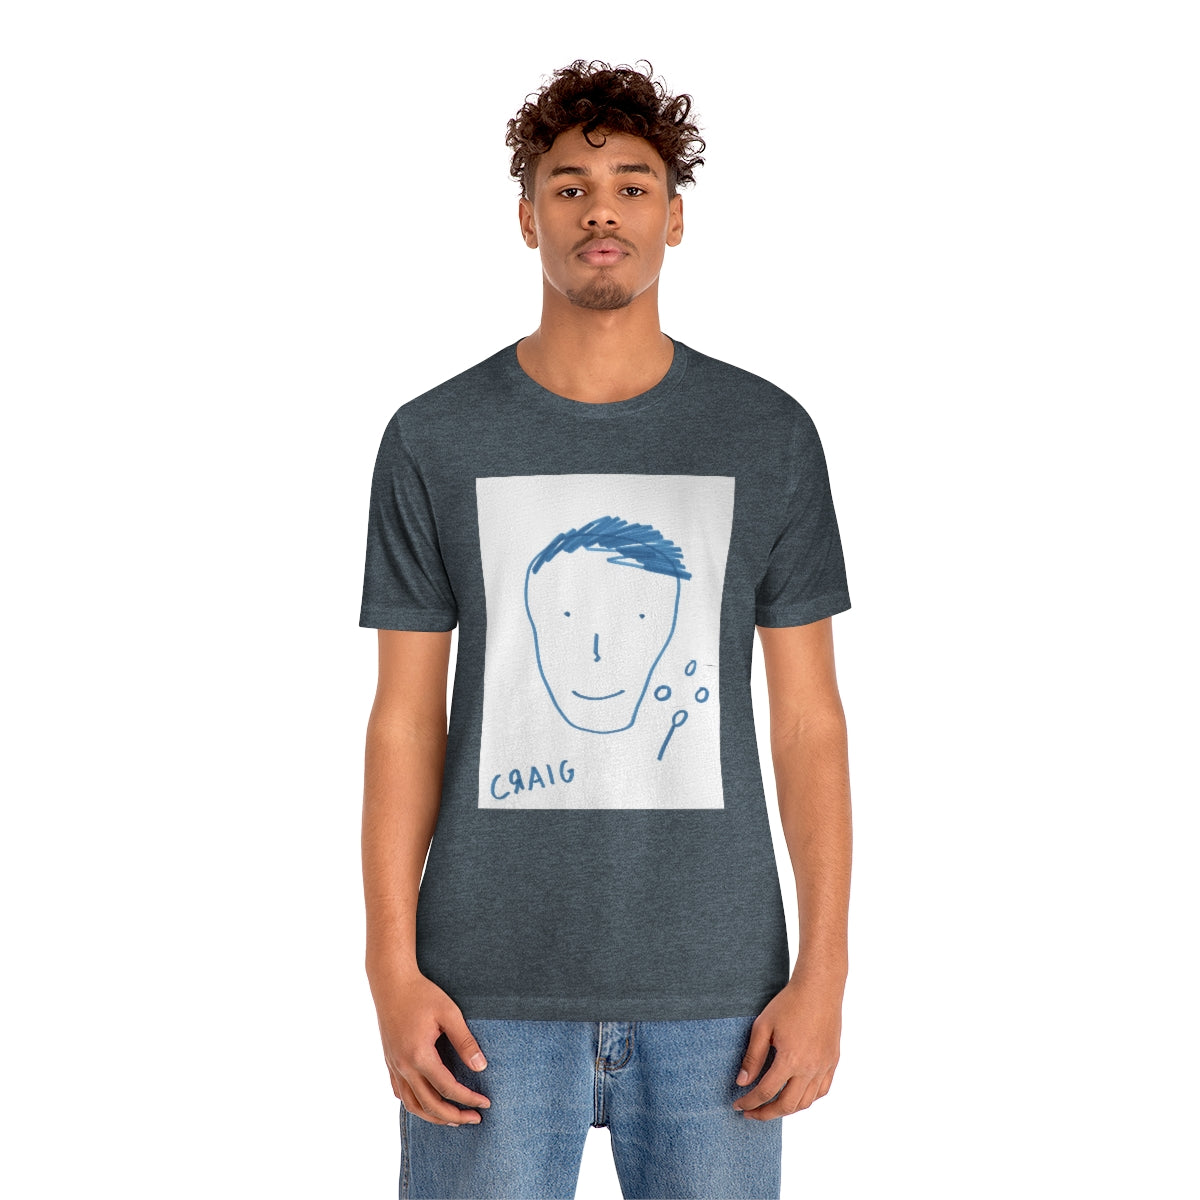 craig's self portrait on paper Shirt (Unisex)